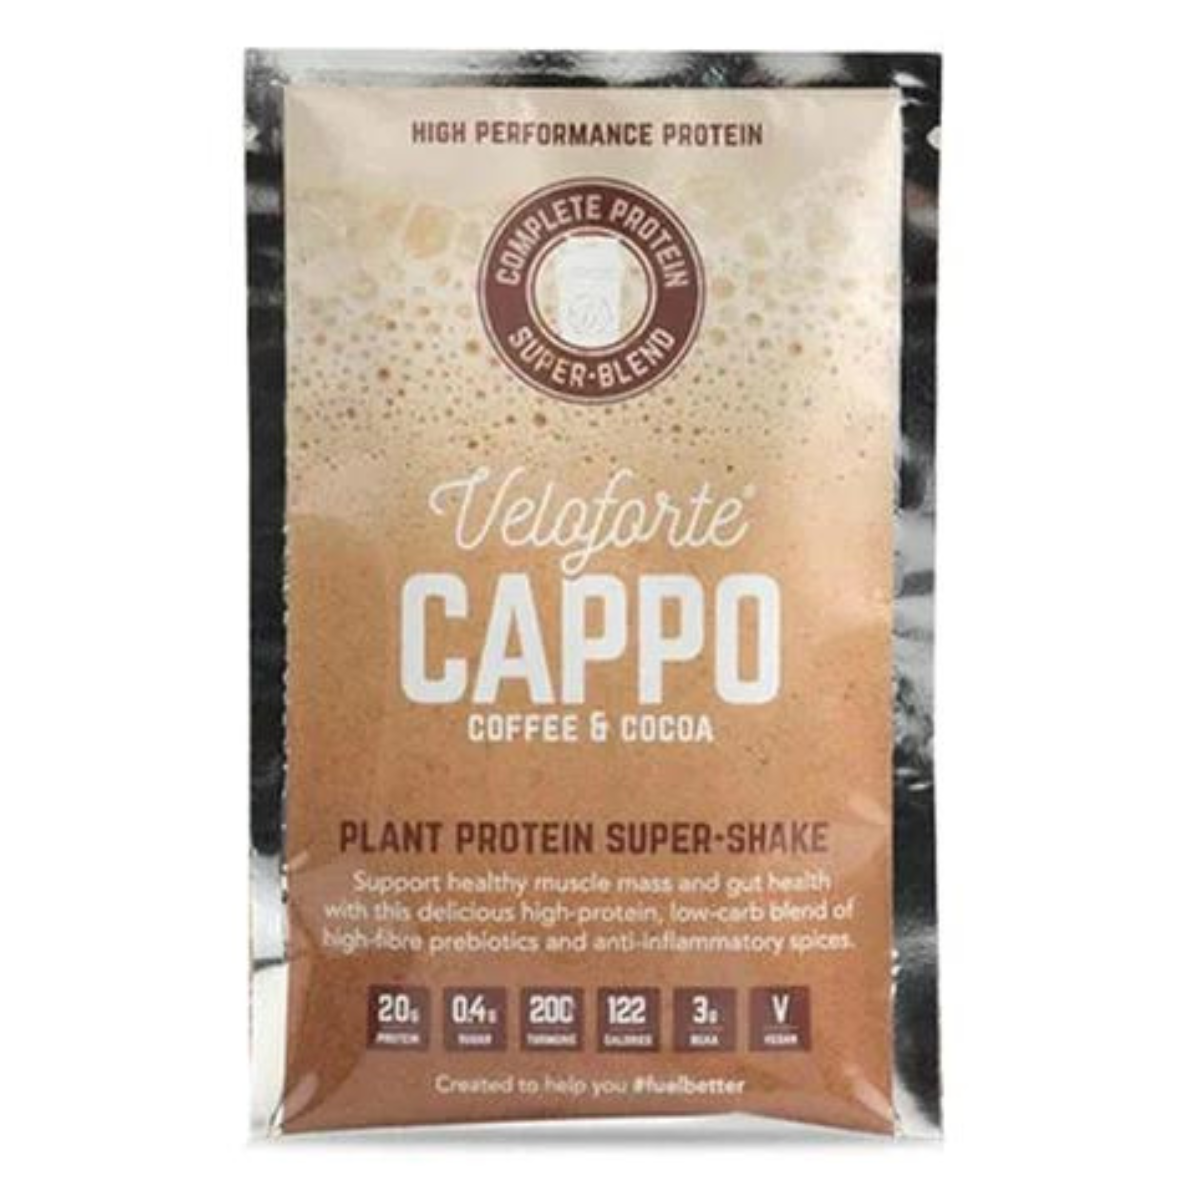 Veloforte - Cappo (Coffee & Cocoa) Protein Shake